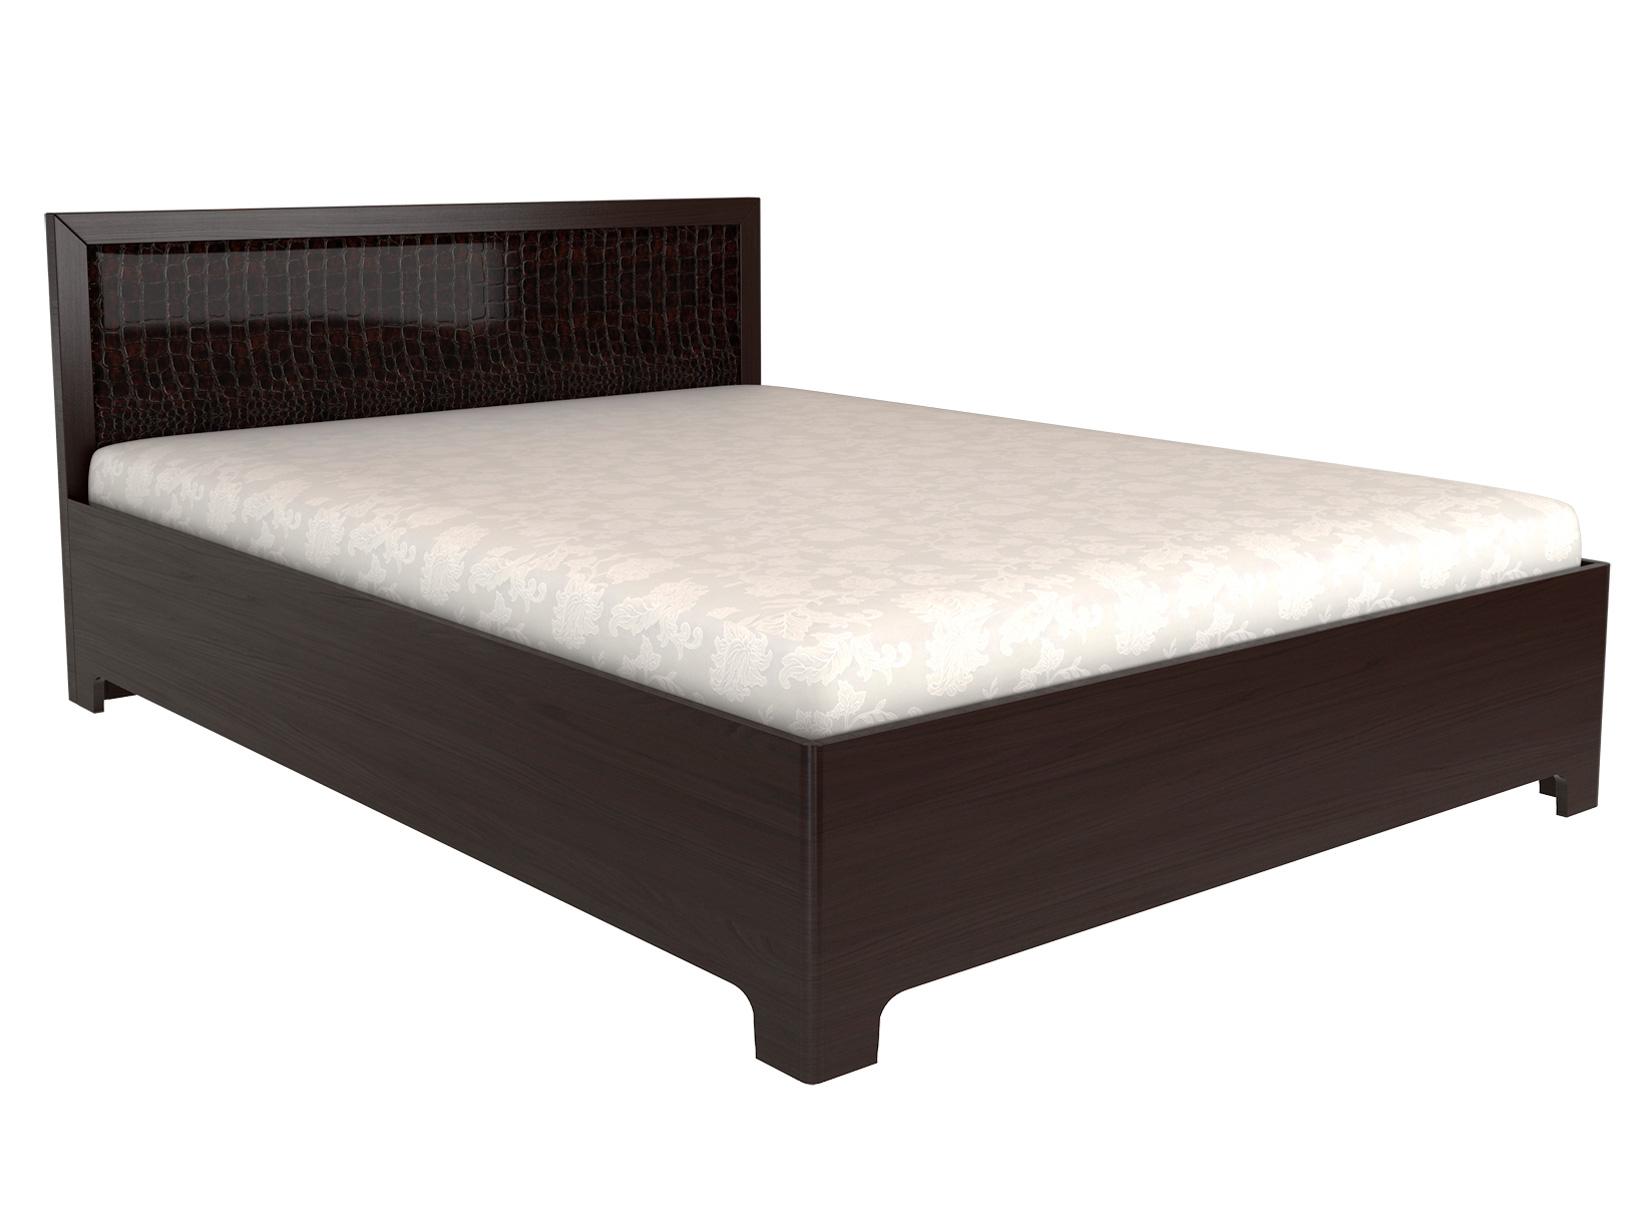 Двуспальная кровать КУРАЖ Кровать Парма 1 / Кровать с подъемным механизмом Парма 1